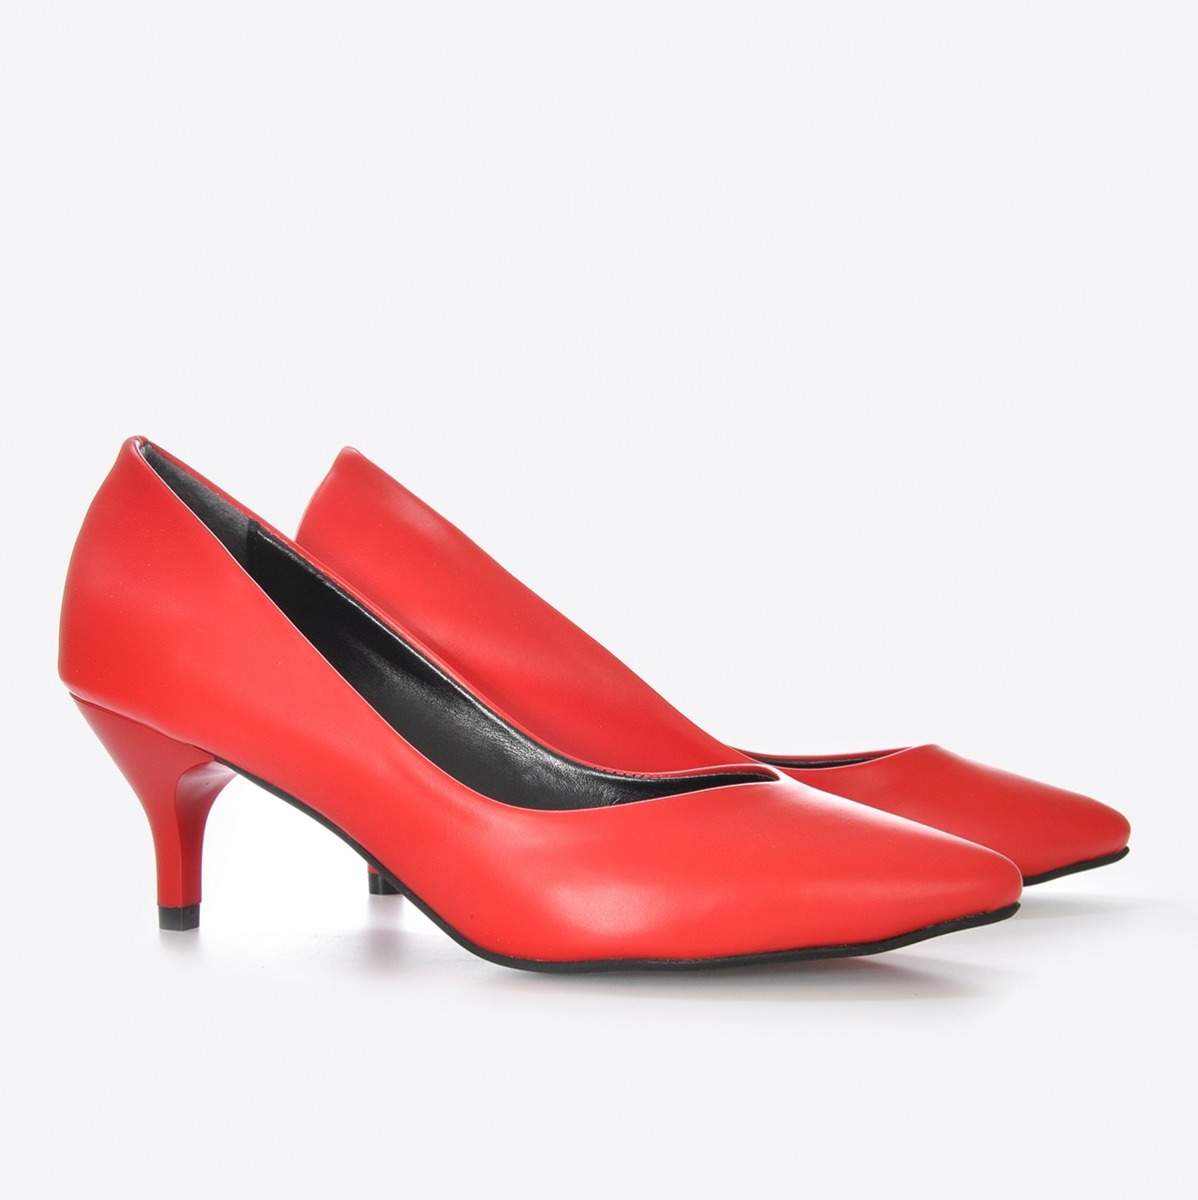 Flo Kadın Kırmızı Klasik Topuklu Ayakkabı VZN21-001Y. 5